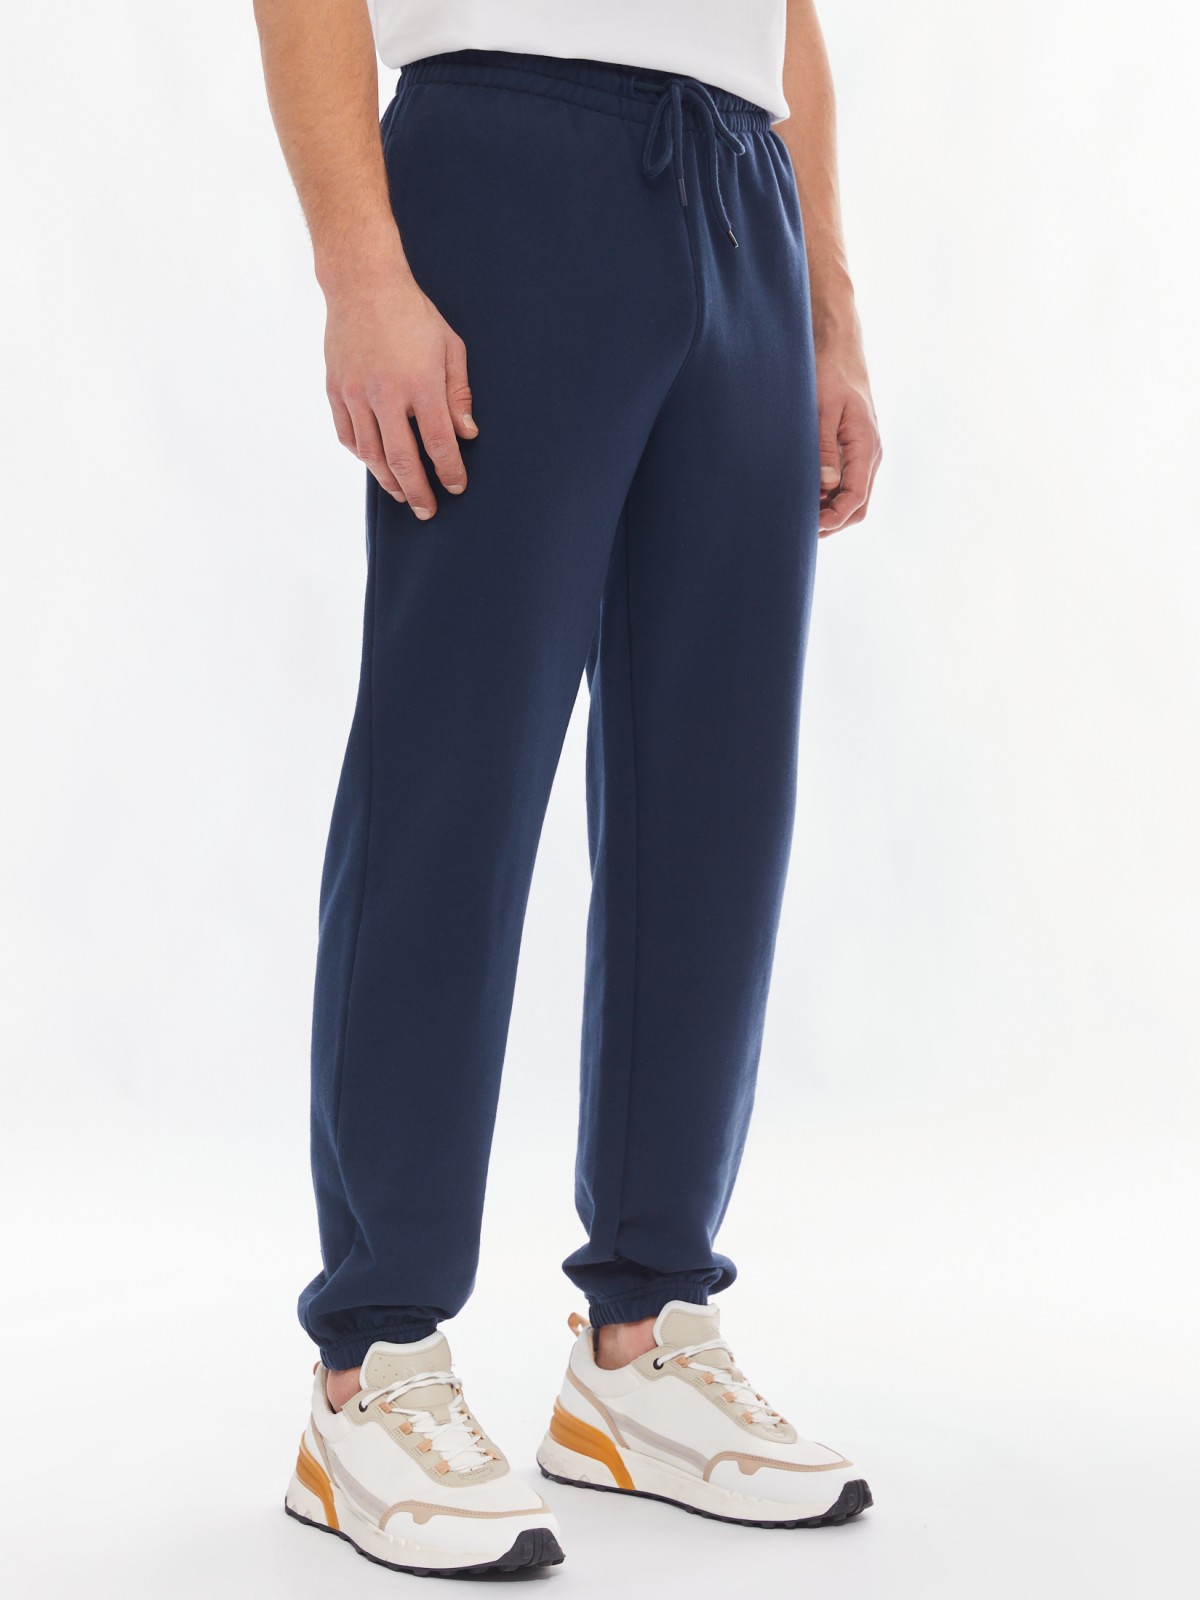 Трикотажные брюки-джоггеры в спортивном стиле zolla 014137660042, цвет синий, размер S - фото 3